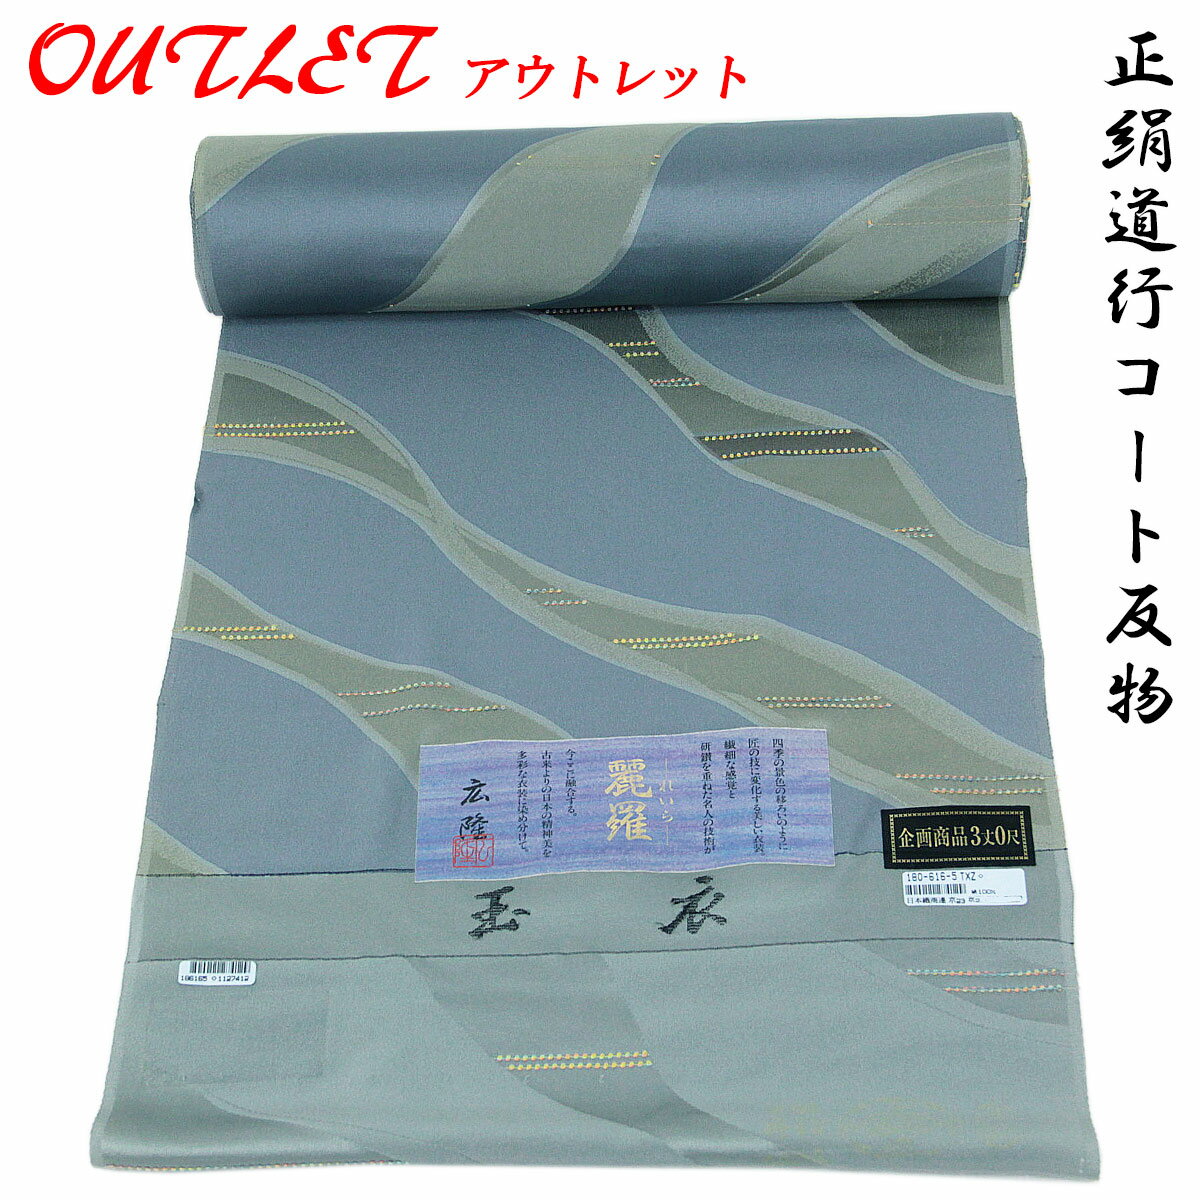 【訳あり】 道行コート 羽尺 反物 -6- 麗羅 京友禅 縫い取りちりめん 絹100% 藍鼠